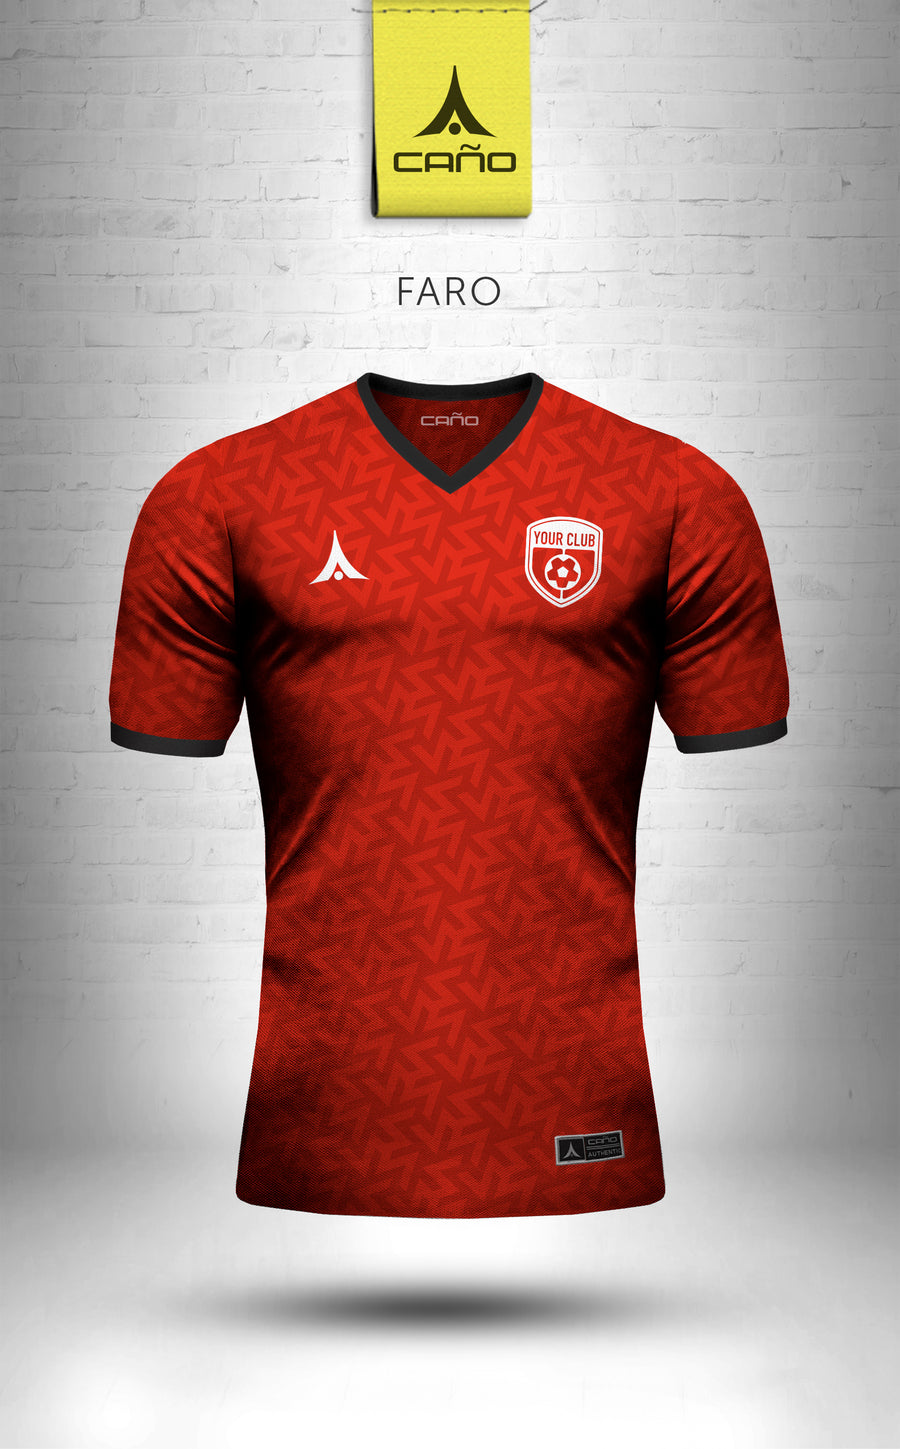 Faro in red/black/white